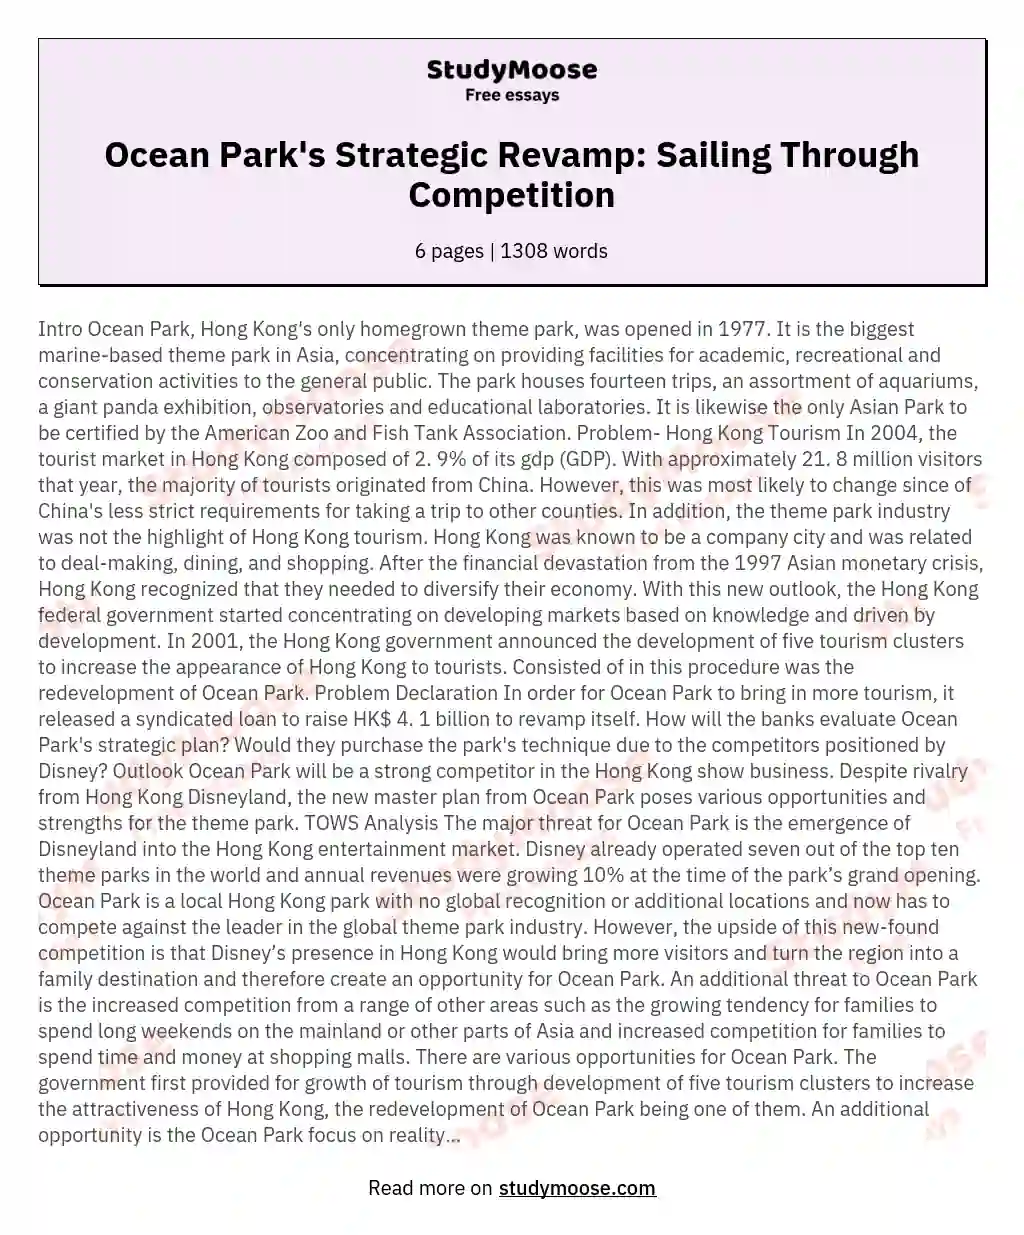 Ocean Park's Strategic Revamp: Sailing Through Competition essay